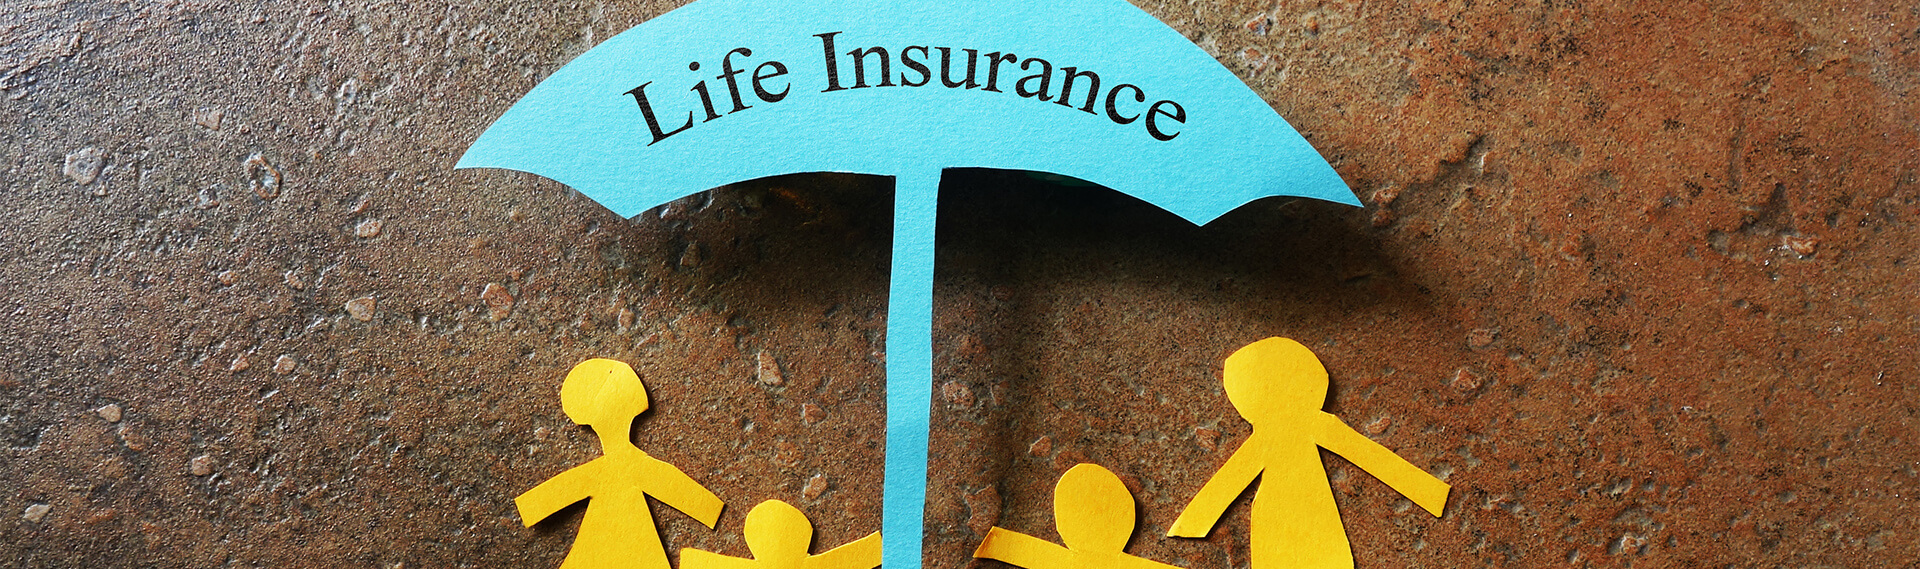 Springfield Insurance Company, Life Insurance and Car Insurance Company